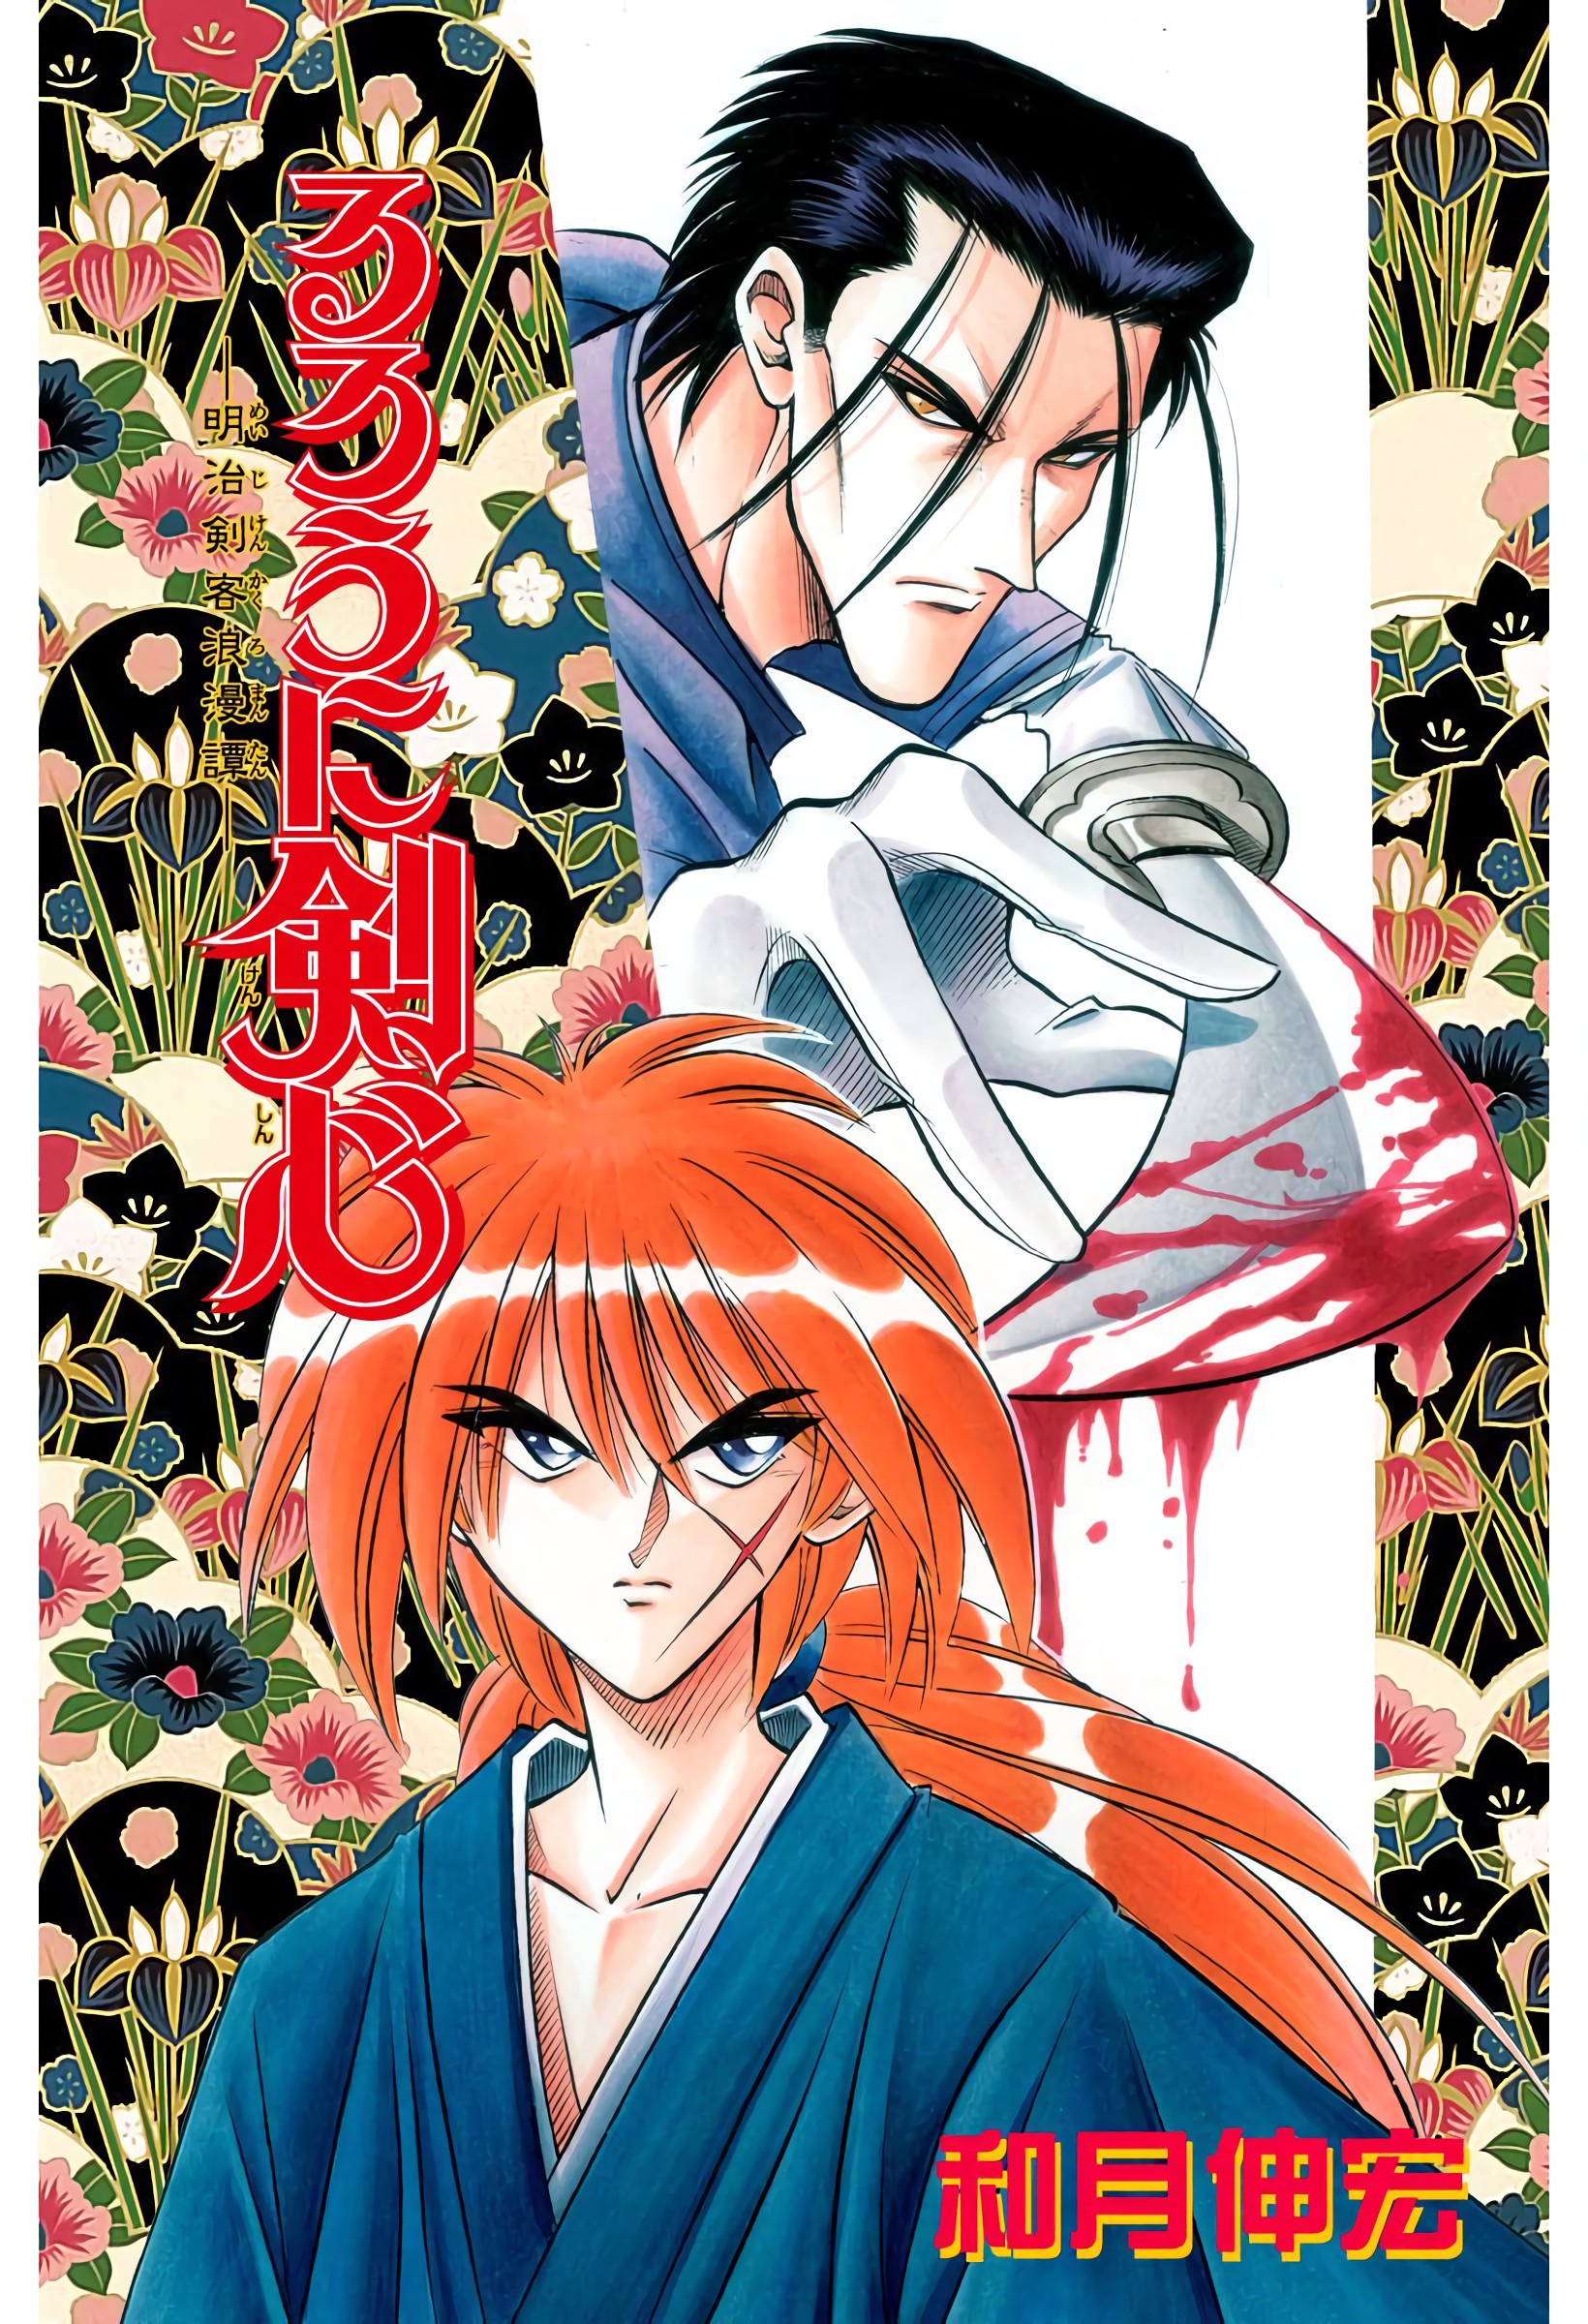 Rurouni Kenshin: Meiji Kenkaku Romantan - Digital Colored Comics Vol.7 Chapter 48